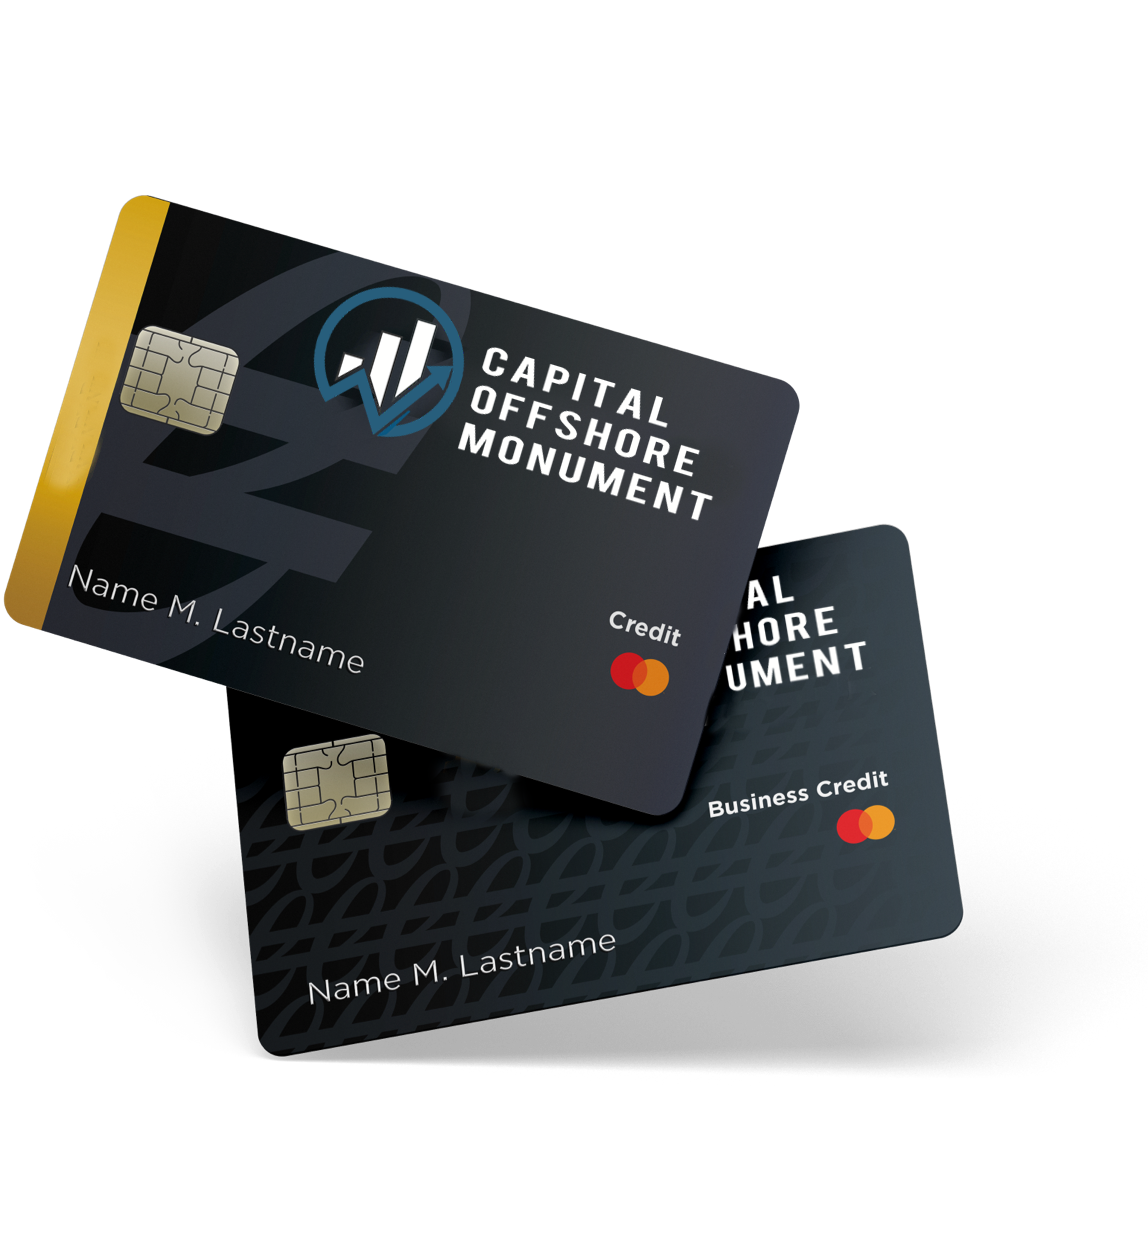 Capital Offshore Monument Debit Cards